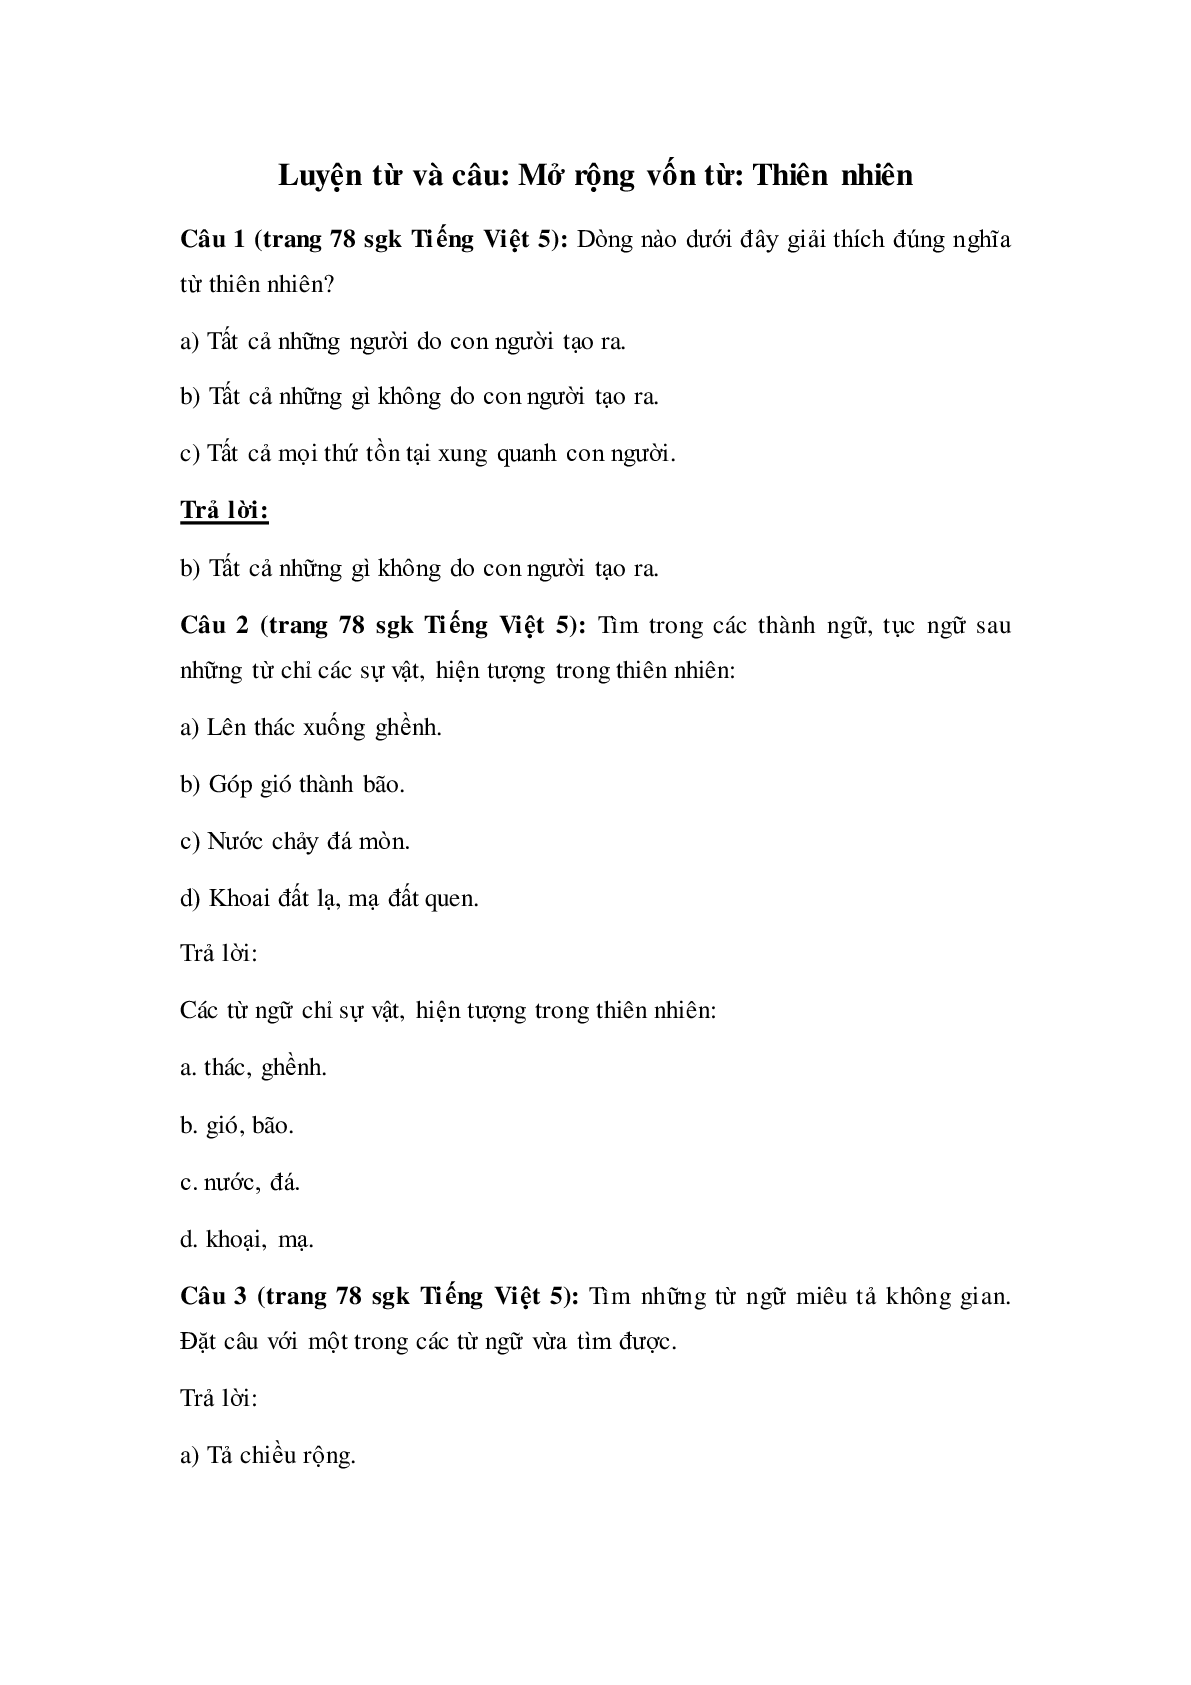 Soạn Tiếng Việt lớp 5: Luyện từ và câu: Mở rộng vốn từ:Thiên nhiên mới nhất (trang 1)